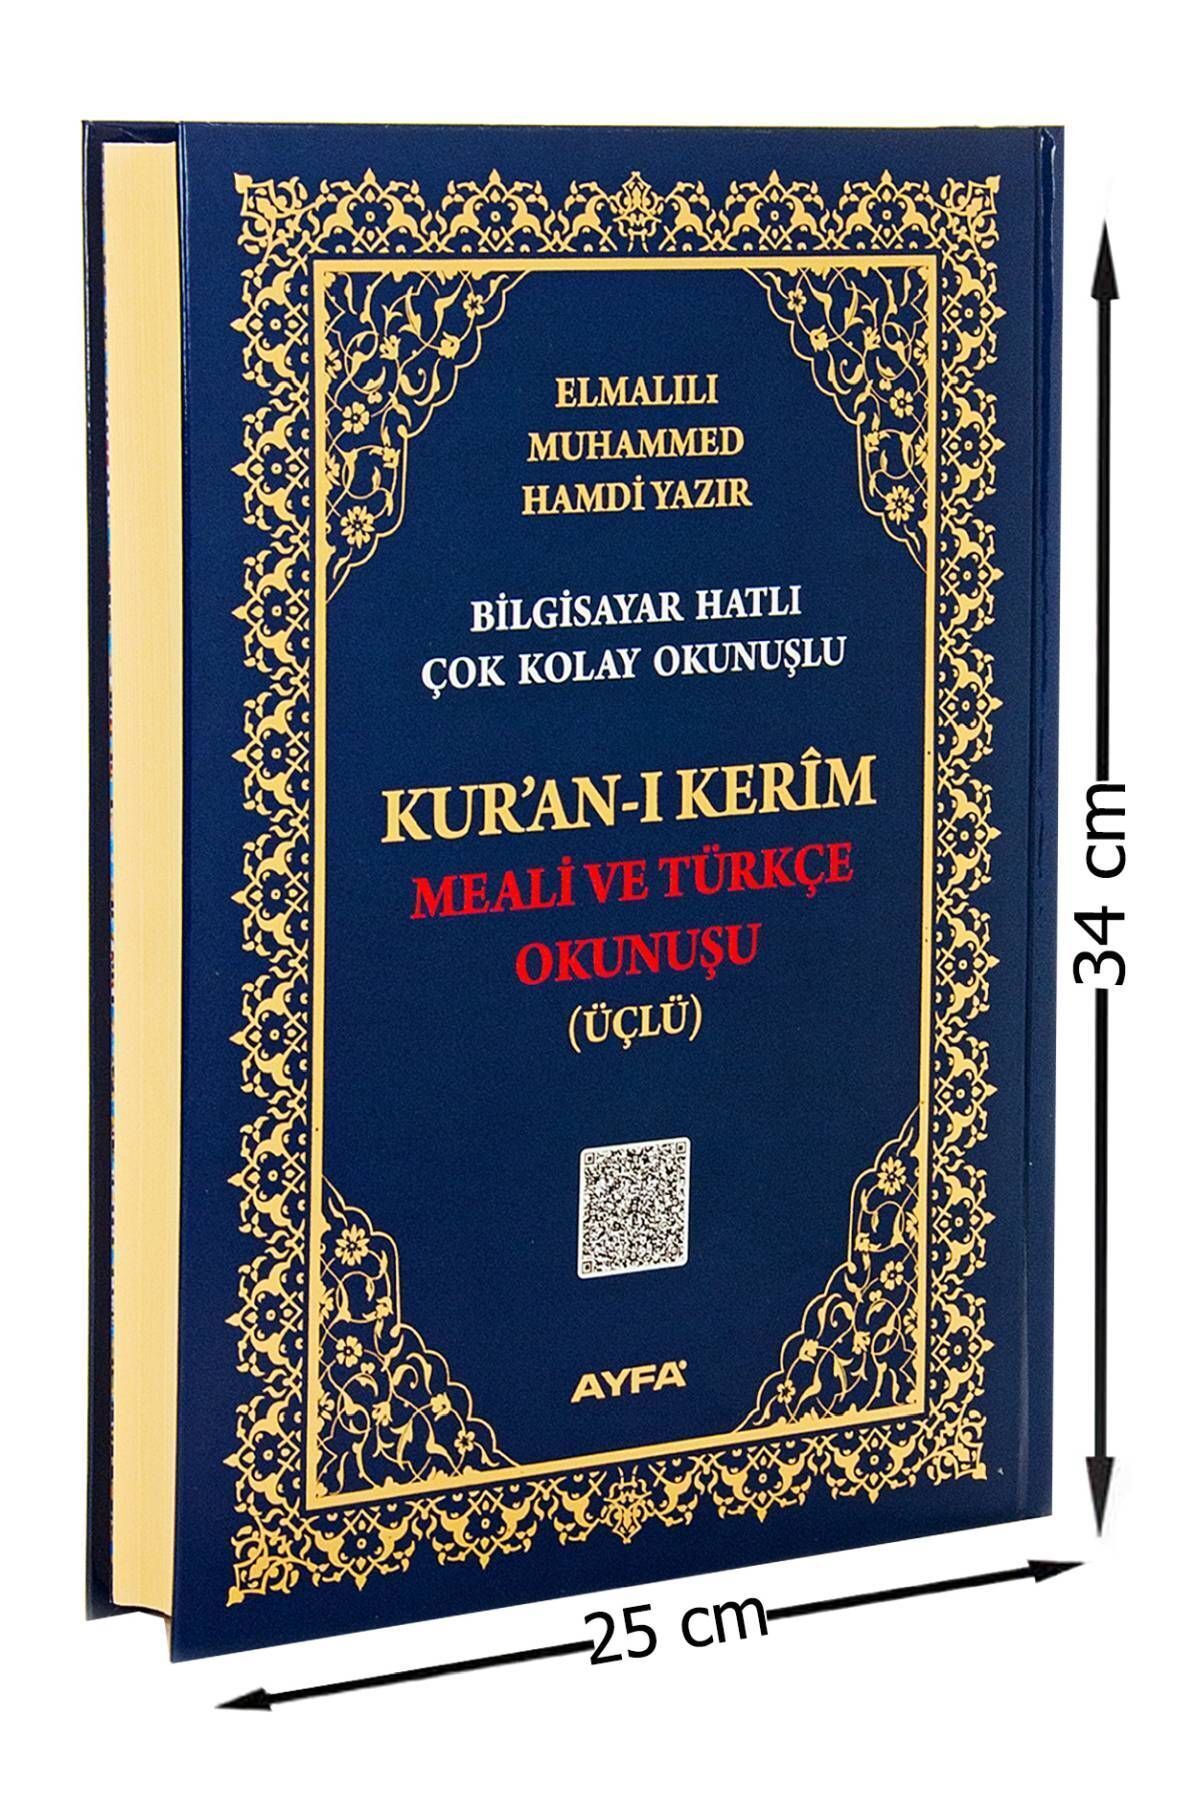 Ayfa Publications Cami Boy Перевод Корана и чтение на турецком языке - тройной 9786055256944